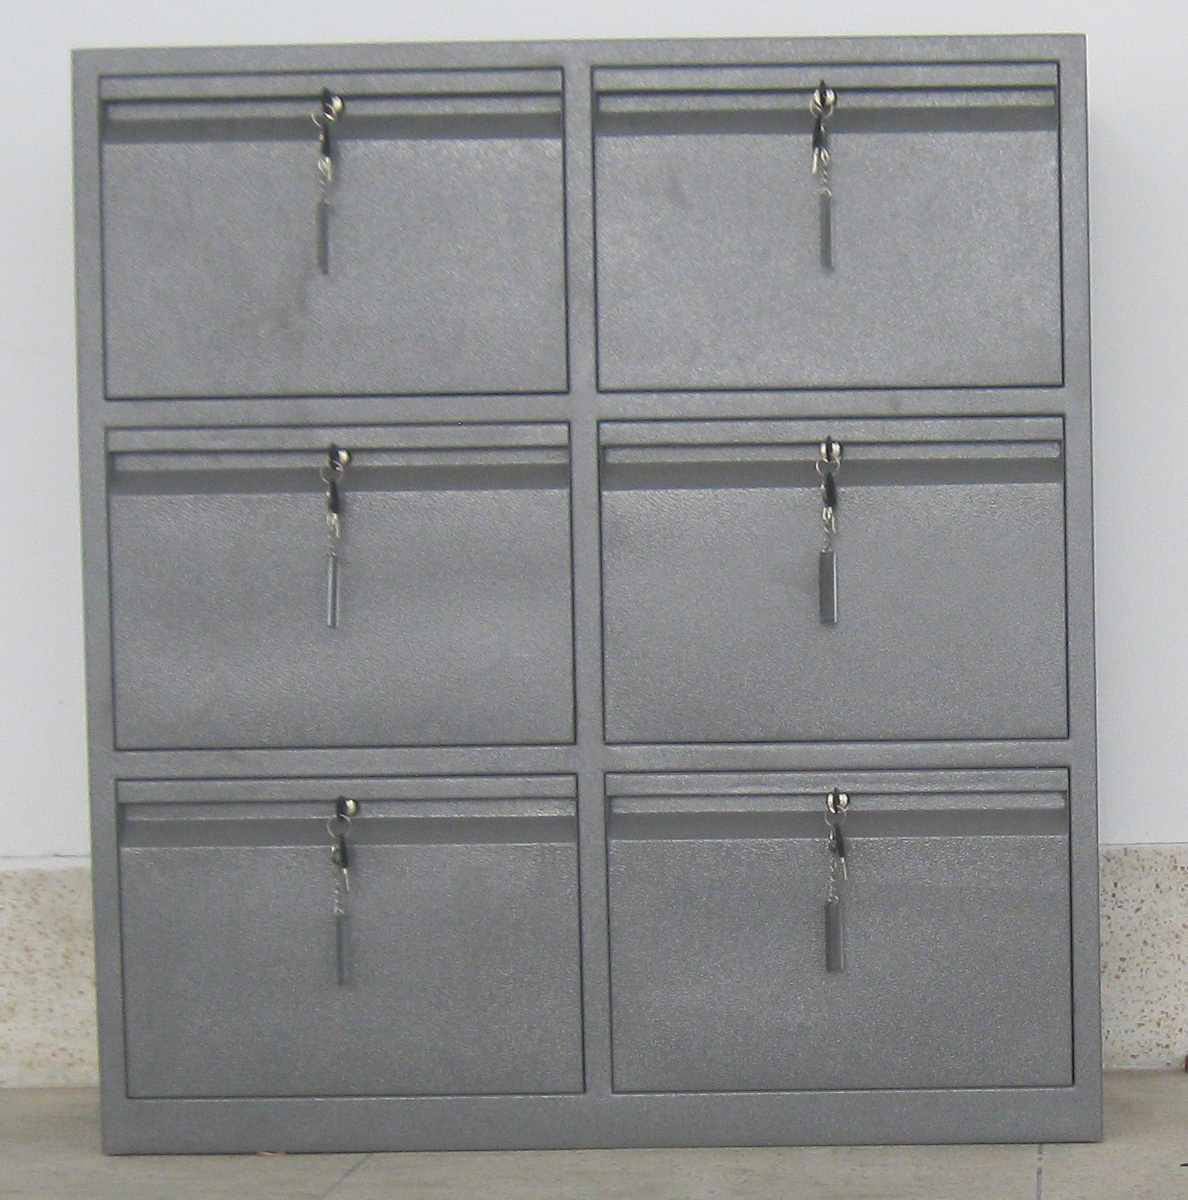 Shameem Engineering - Six Drawer file cabinet